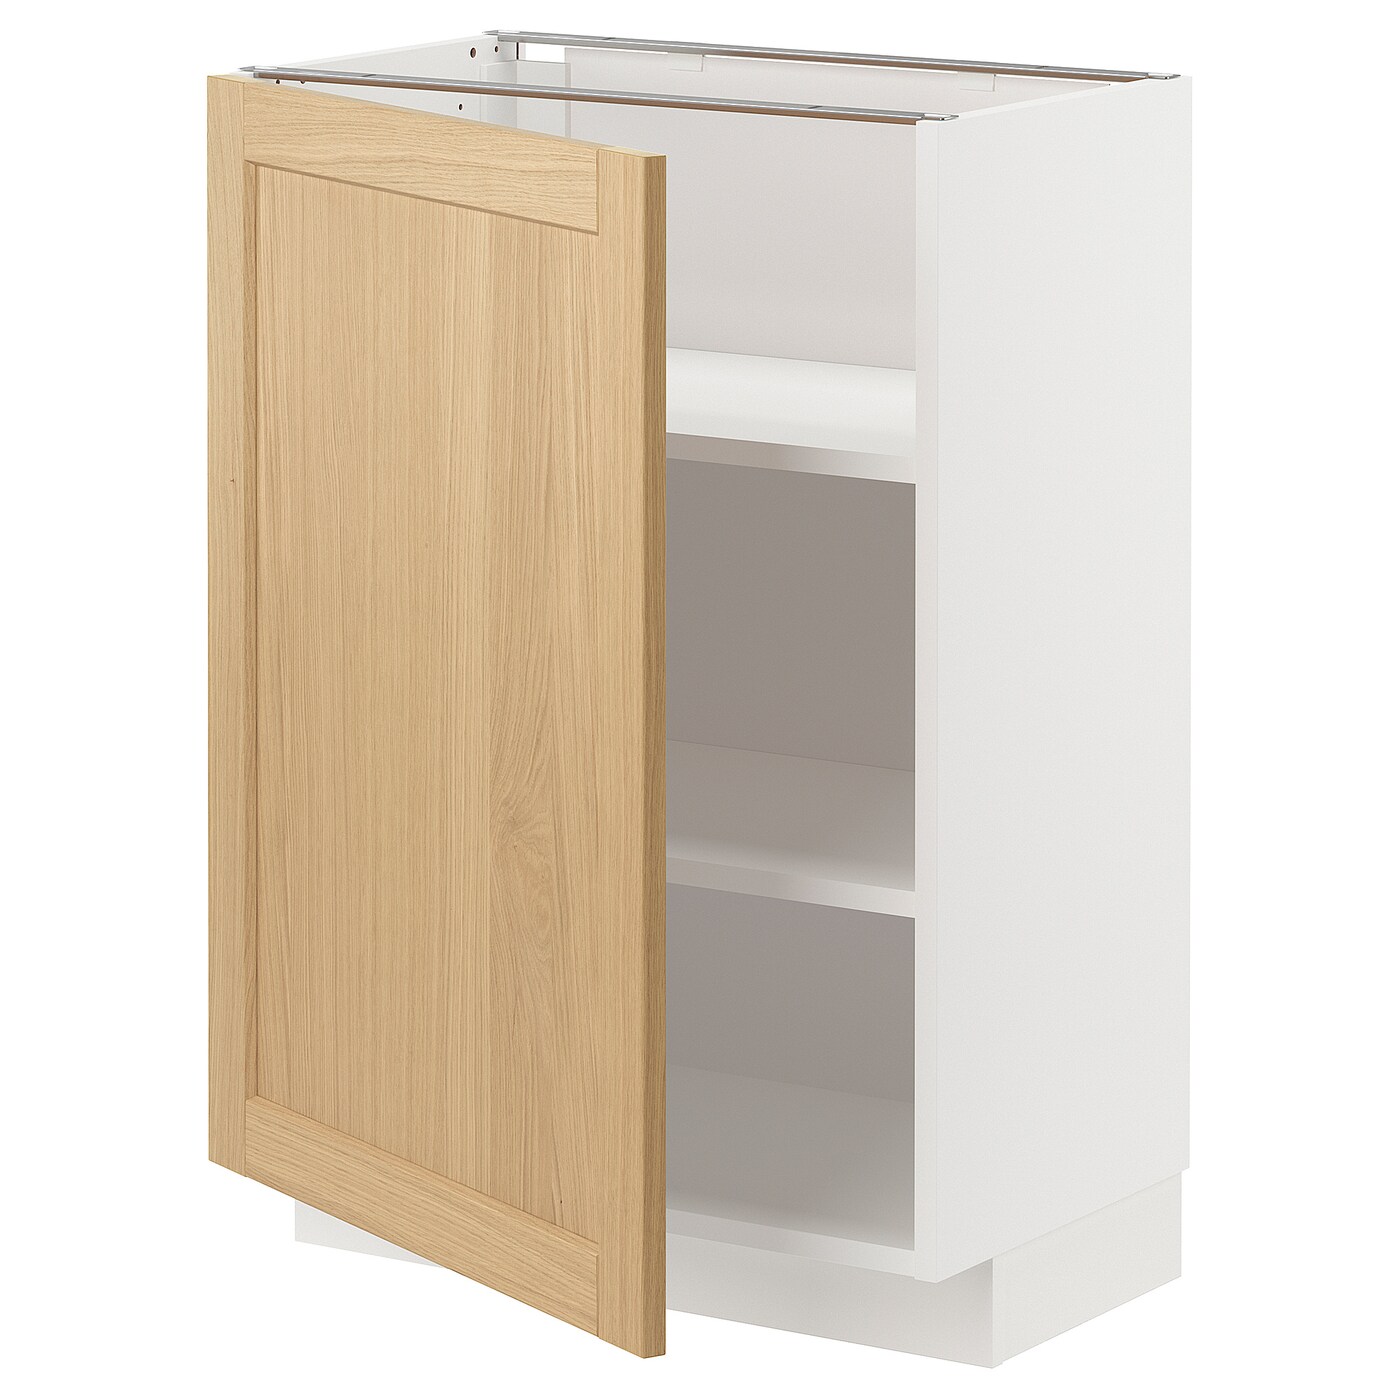 Напольный шкаф - METOD IKEA/ МЕТОД ИКЕА,  60х37 см, белый/под беленый дуб